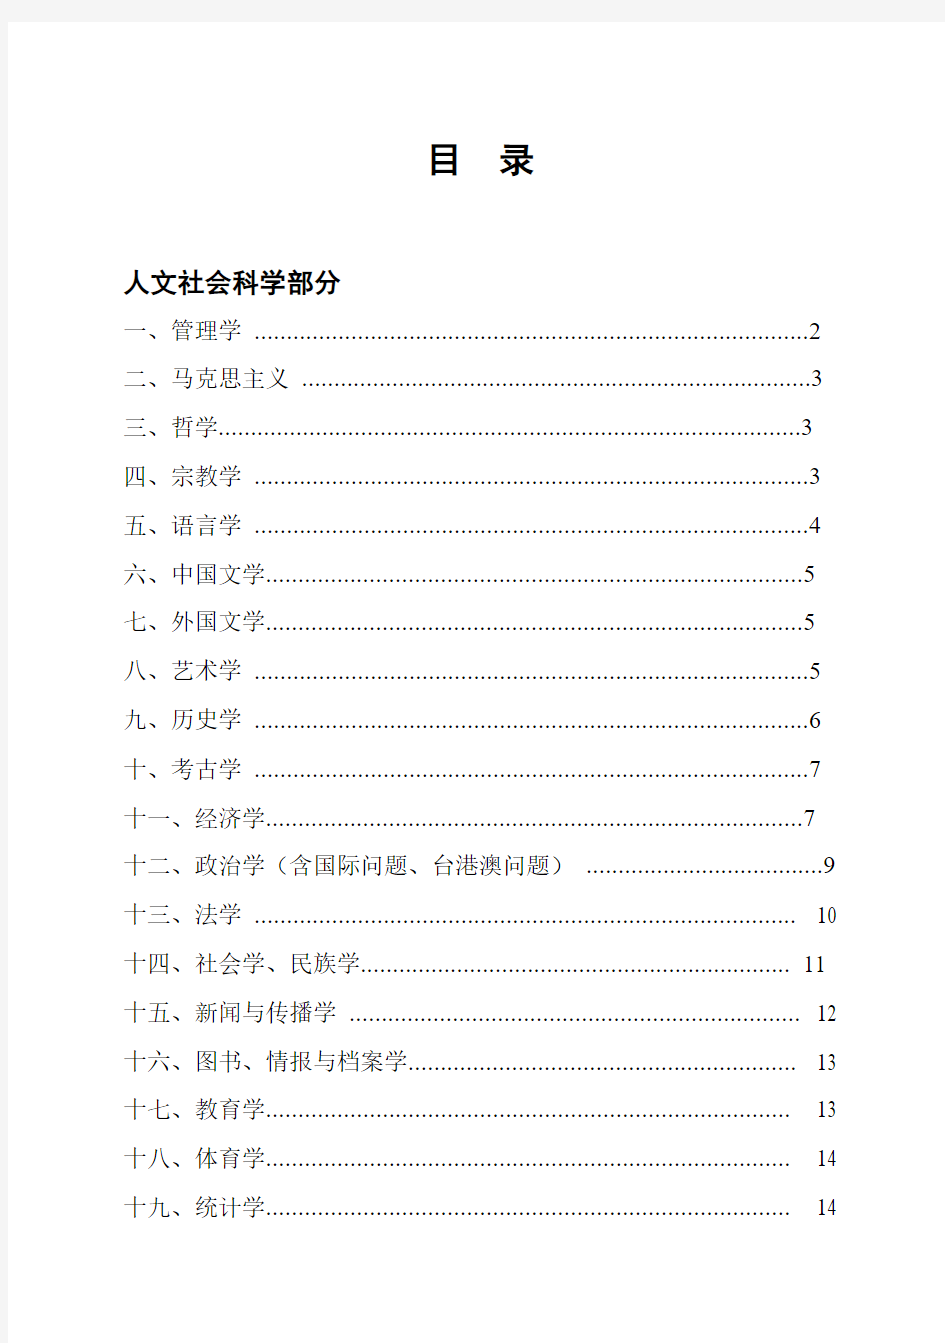 南开大学中文核心期刊表(2009年版)